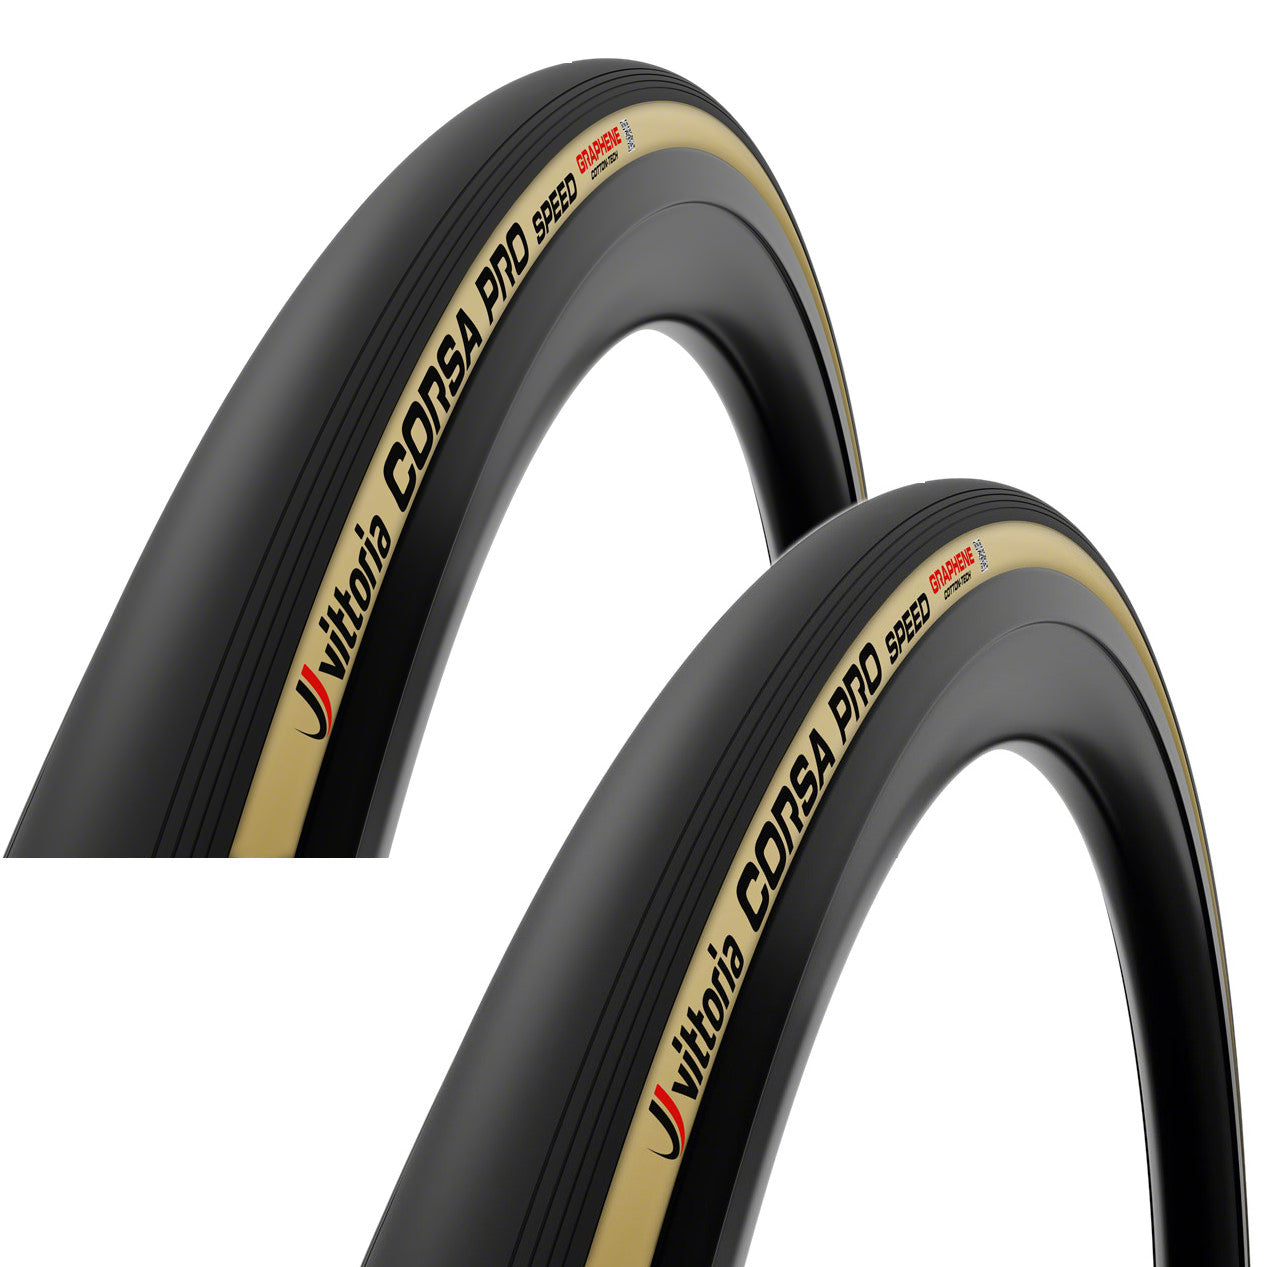 Vittoria Corsa Pro Speed 700c TLR Tubeless Tire - The Bikesmiths